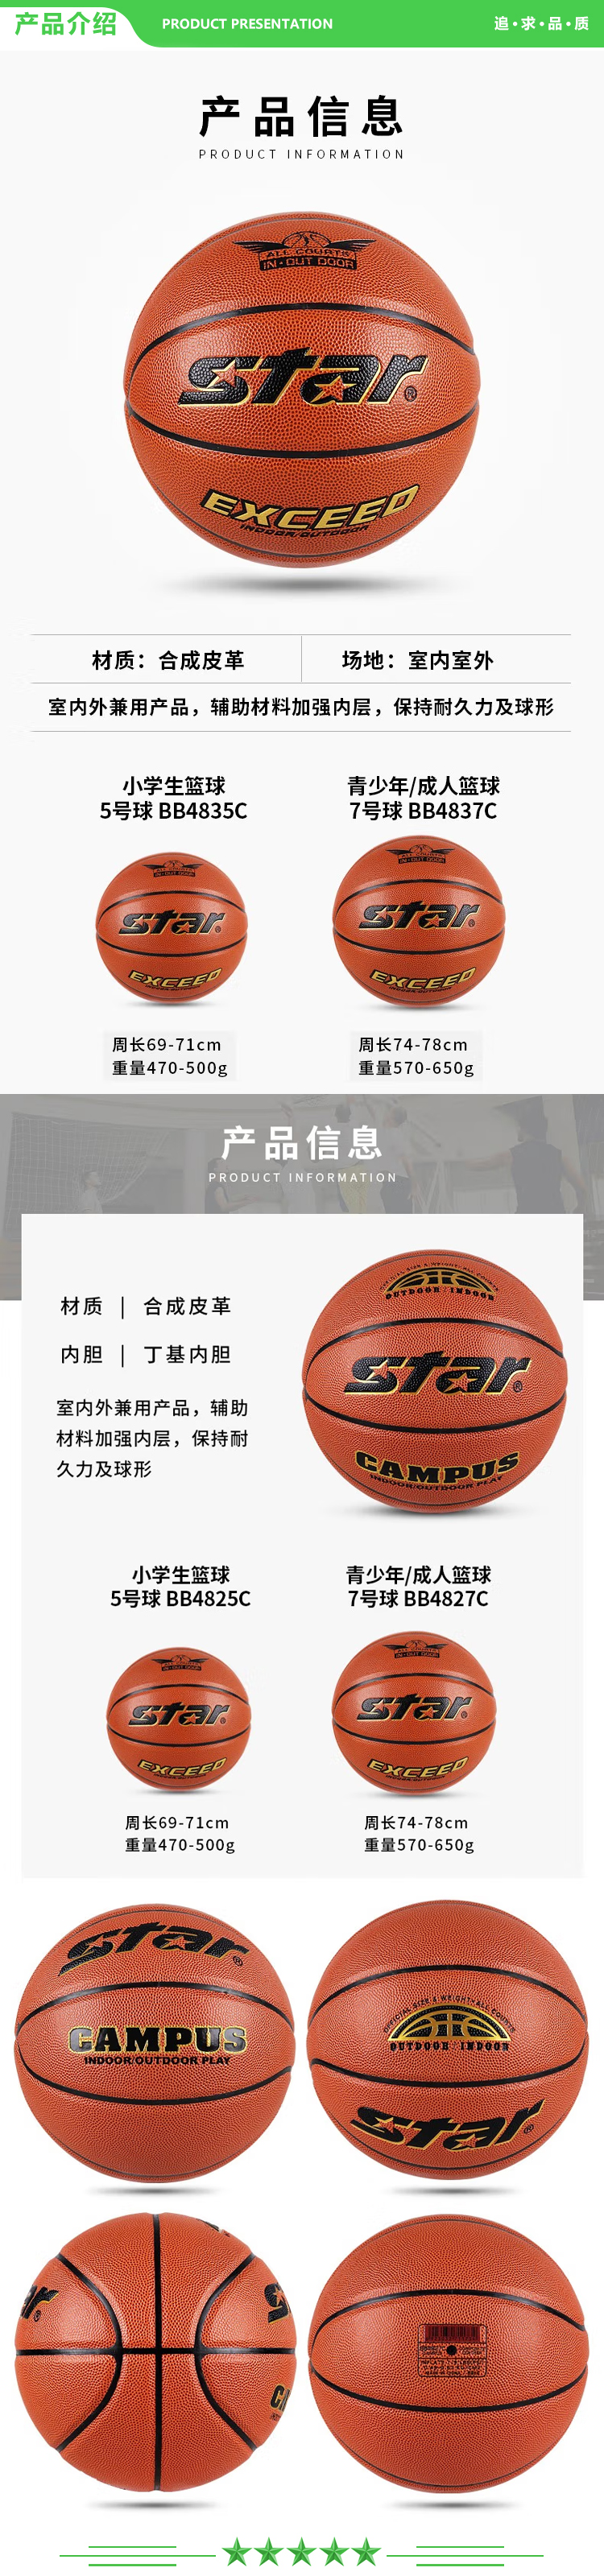 世达 star BB4825C (5号小学生用球) 篮球中学生耐磨PU篮球室内外初中生专用球.jpg